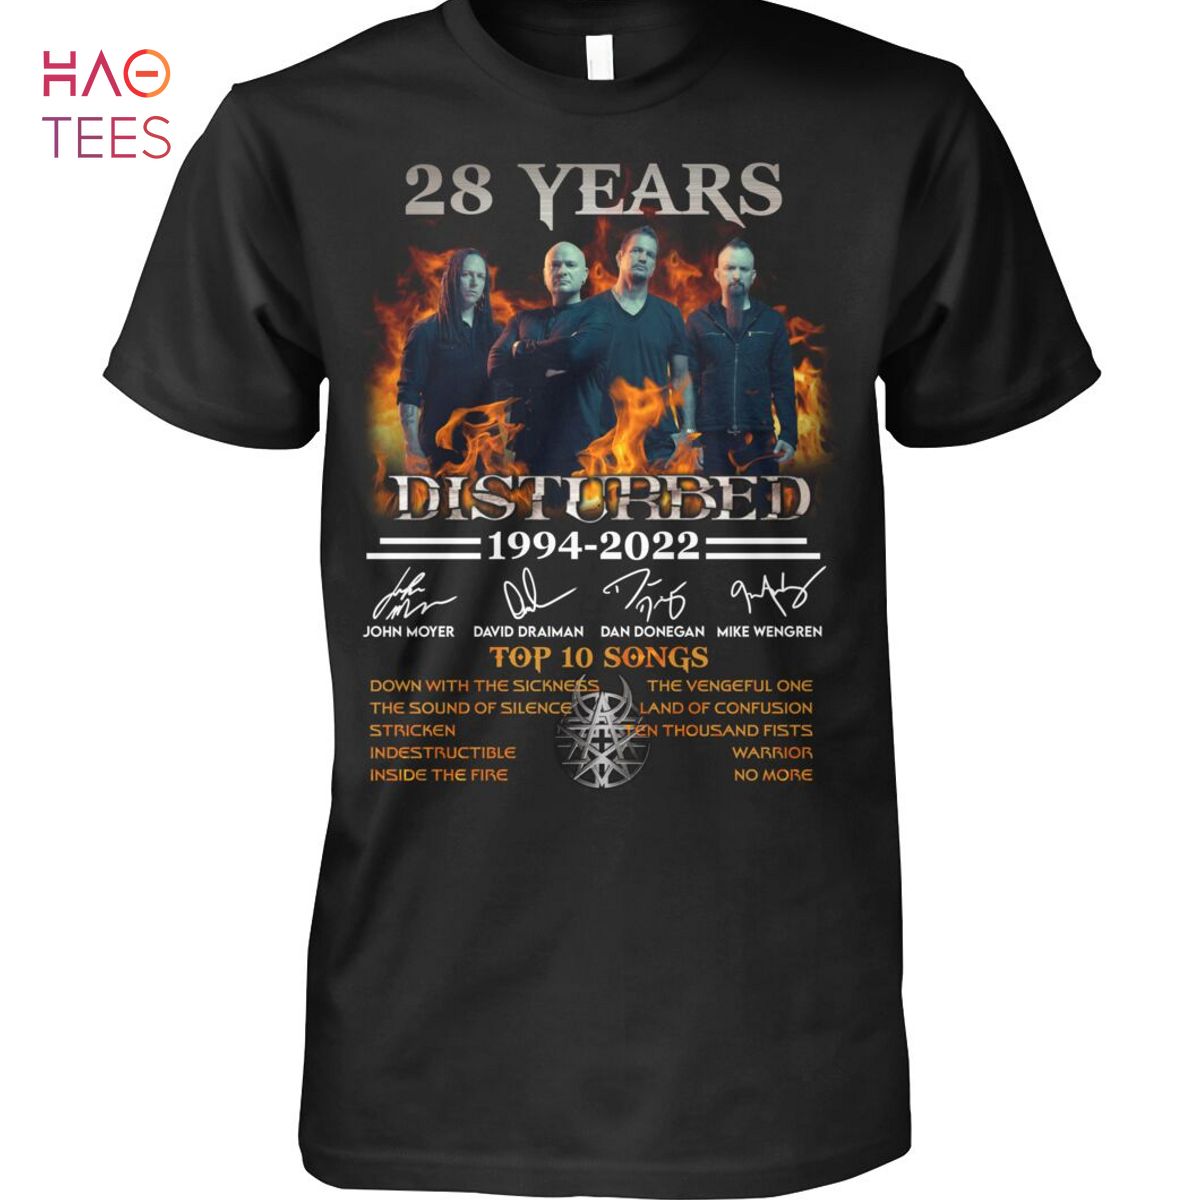 28 Years 1994-2022 Disturbed Shirt